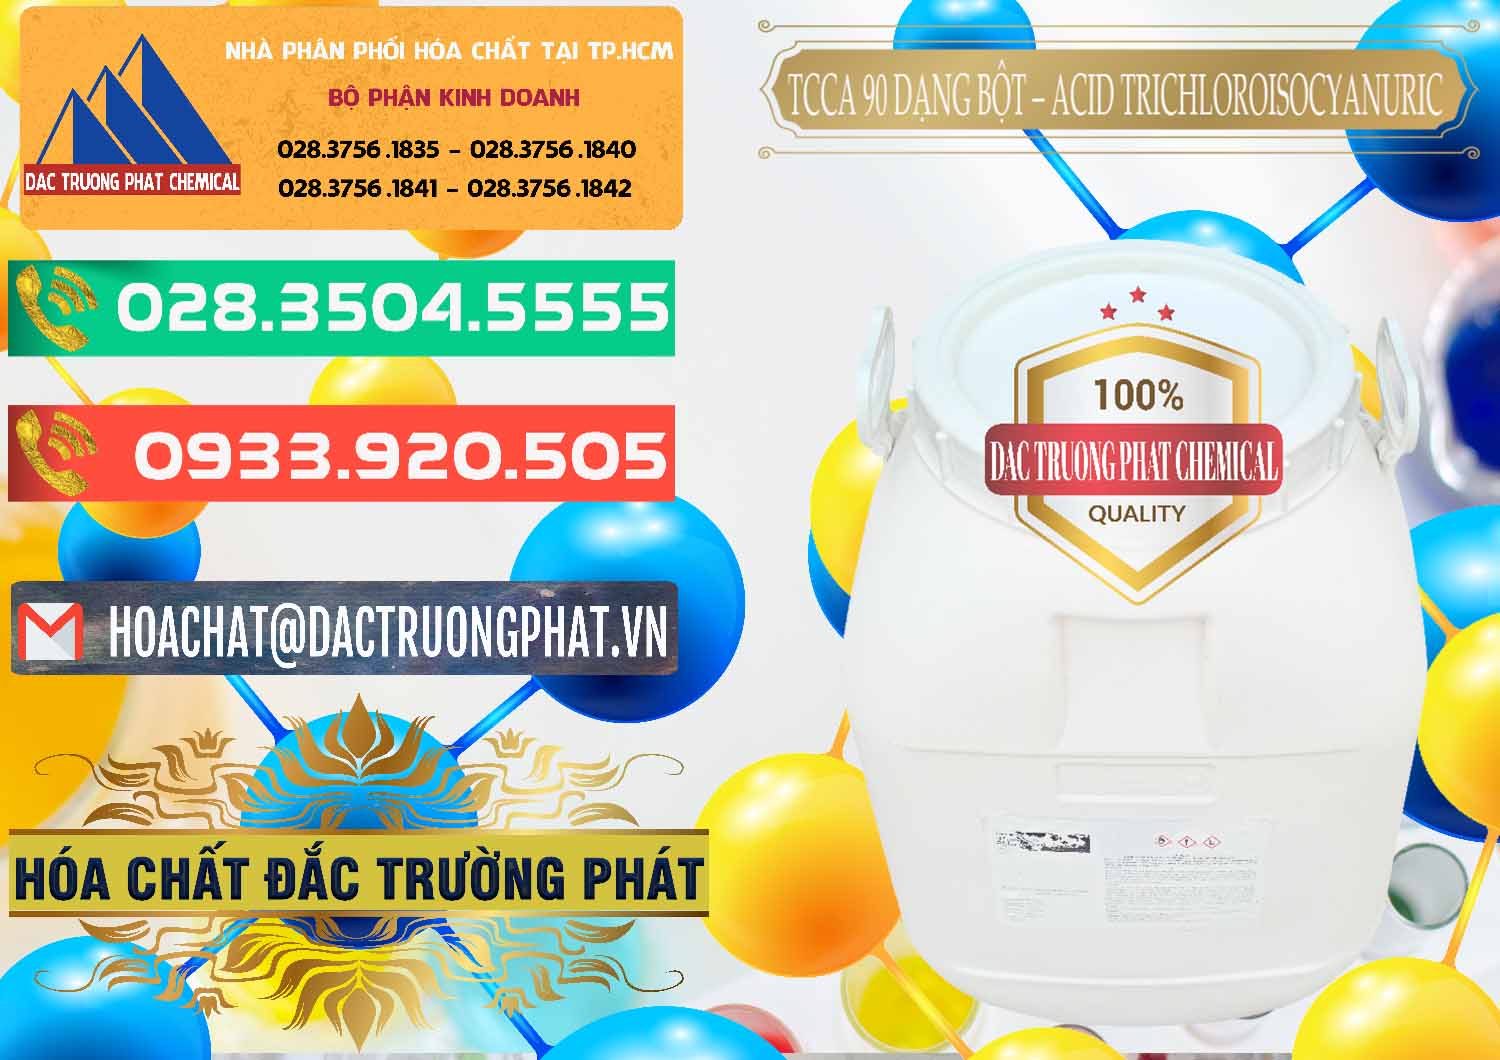 Nơi chuyên kinh doanh _ bán TCCA - Acid Trichloroisocyanuric 90% Dạng Bột Trung Quốc China - 0161 - Nơi cung ứng & phân phối hóa chất tại TP.HCM - congtyhoachat.com.vn